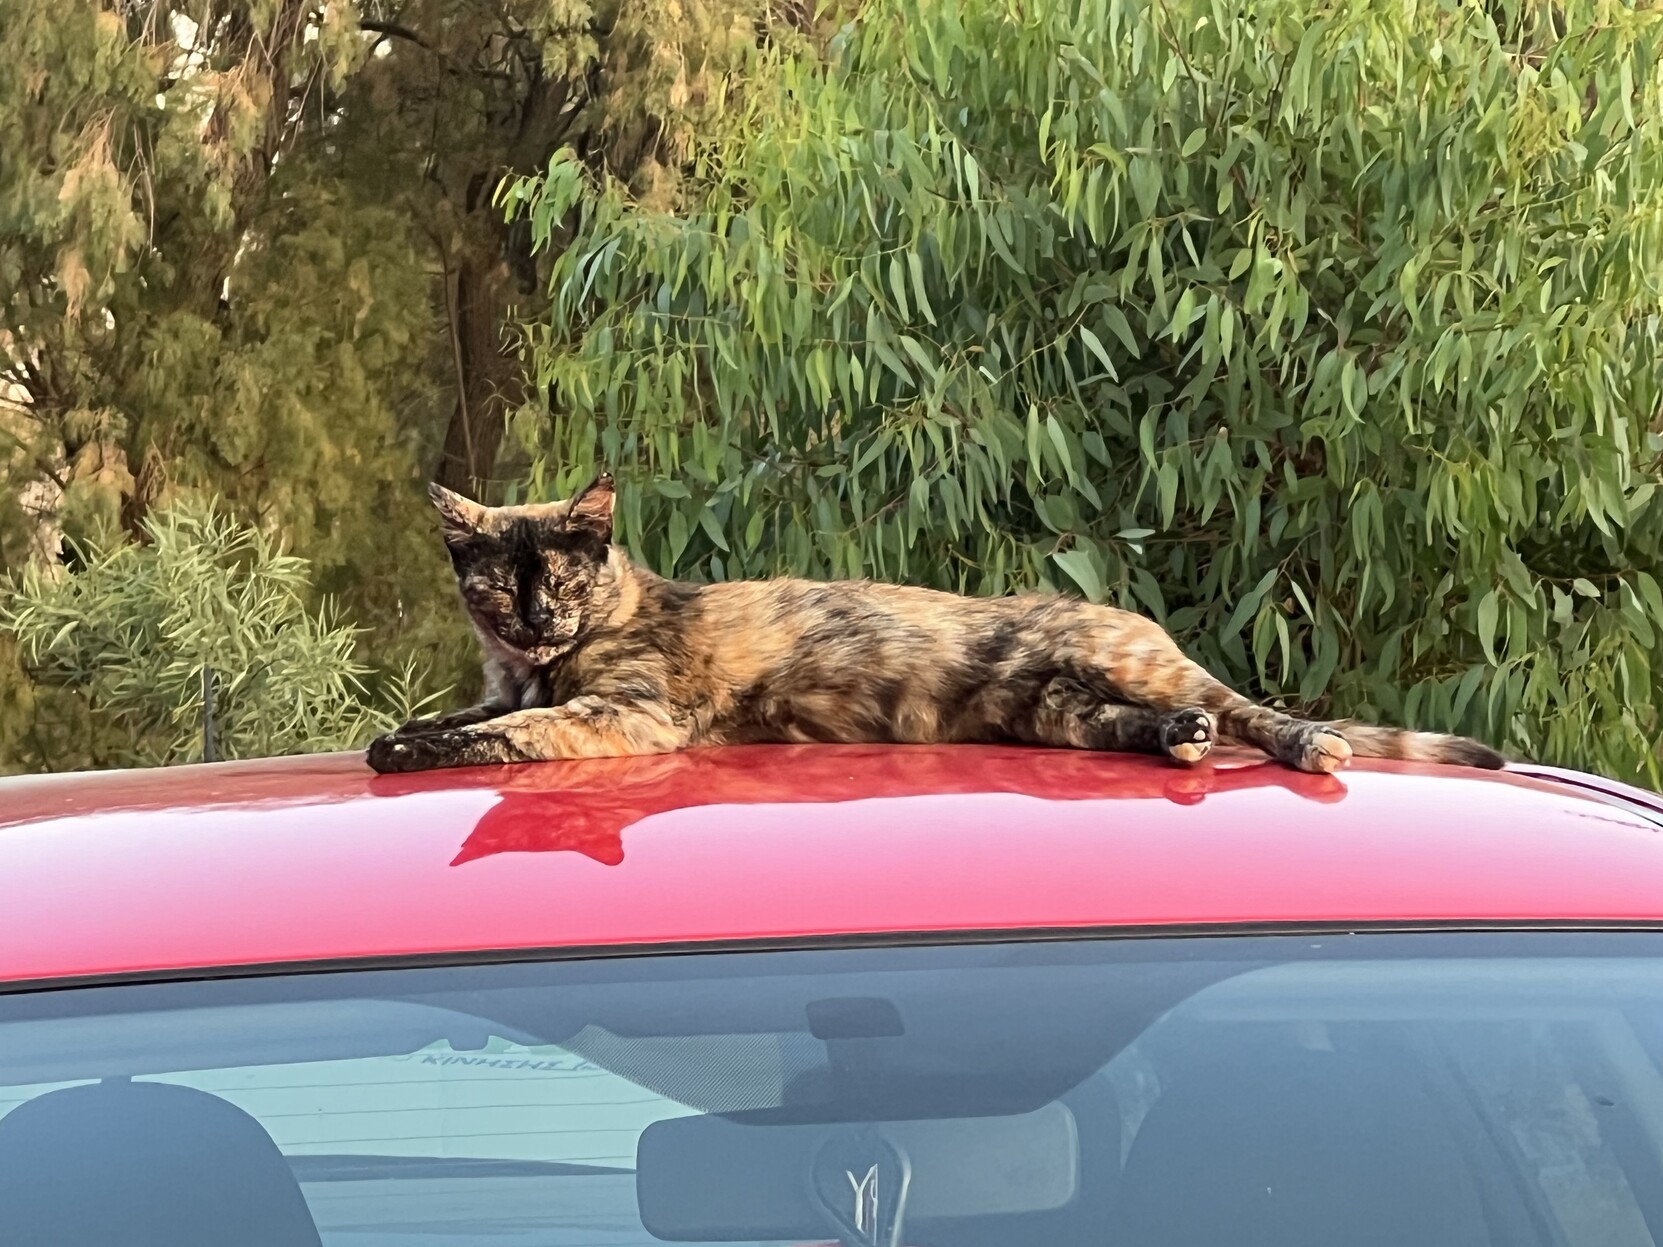 Katze liegt ausgestreckt auf Autodach. 